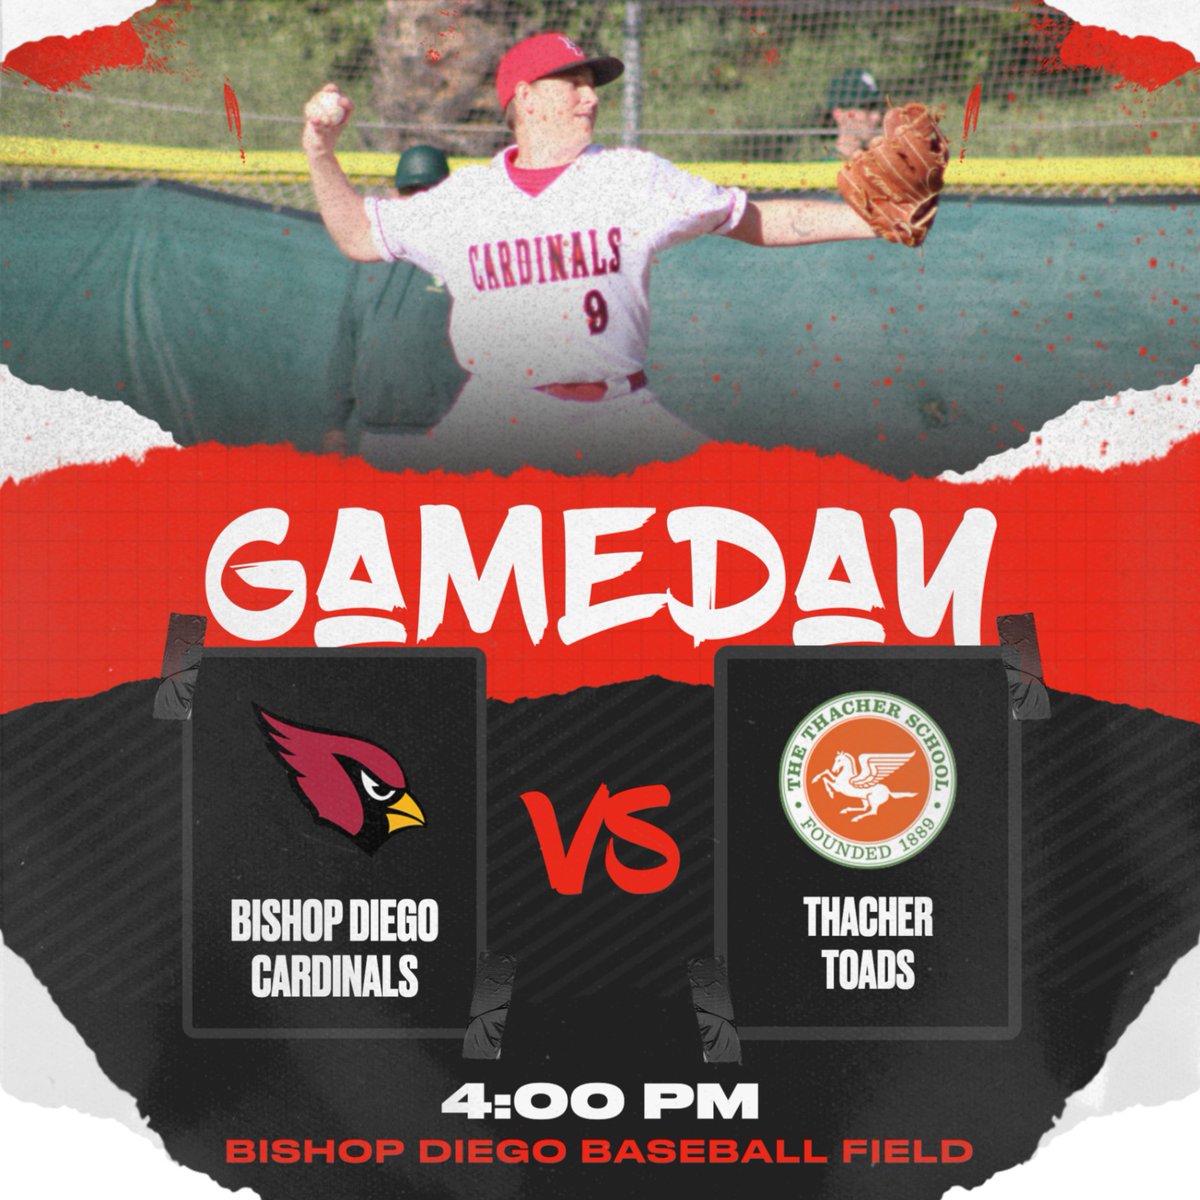 ⚾ GAMEDAY⚾ 

🆚 Thacher

⌚️ 4:00

📍 Baseball Field, Bishop Diego

📺 Stream Live on GameChanger

#GoCardinals